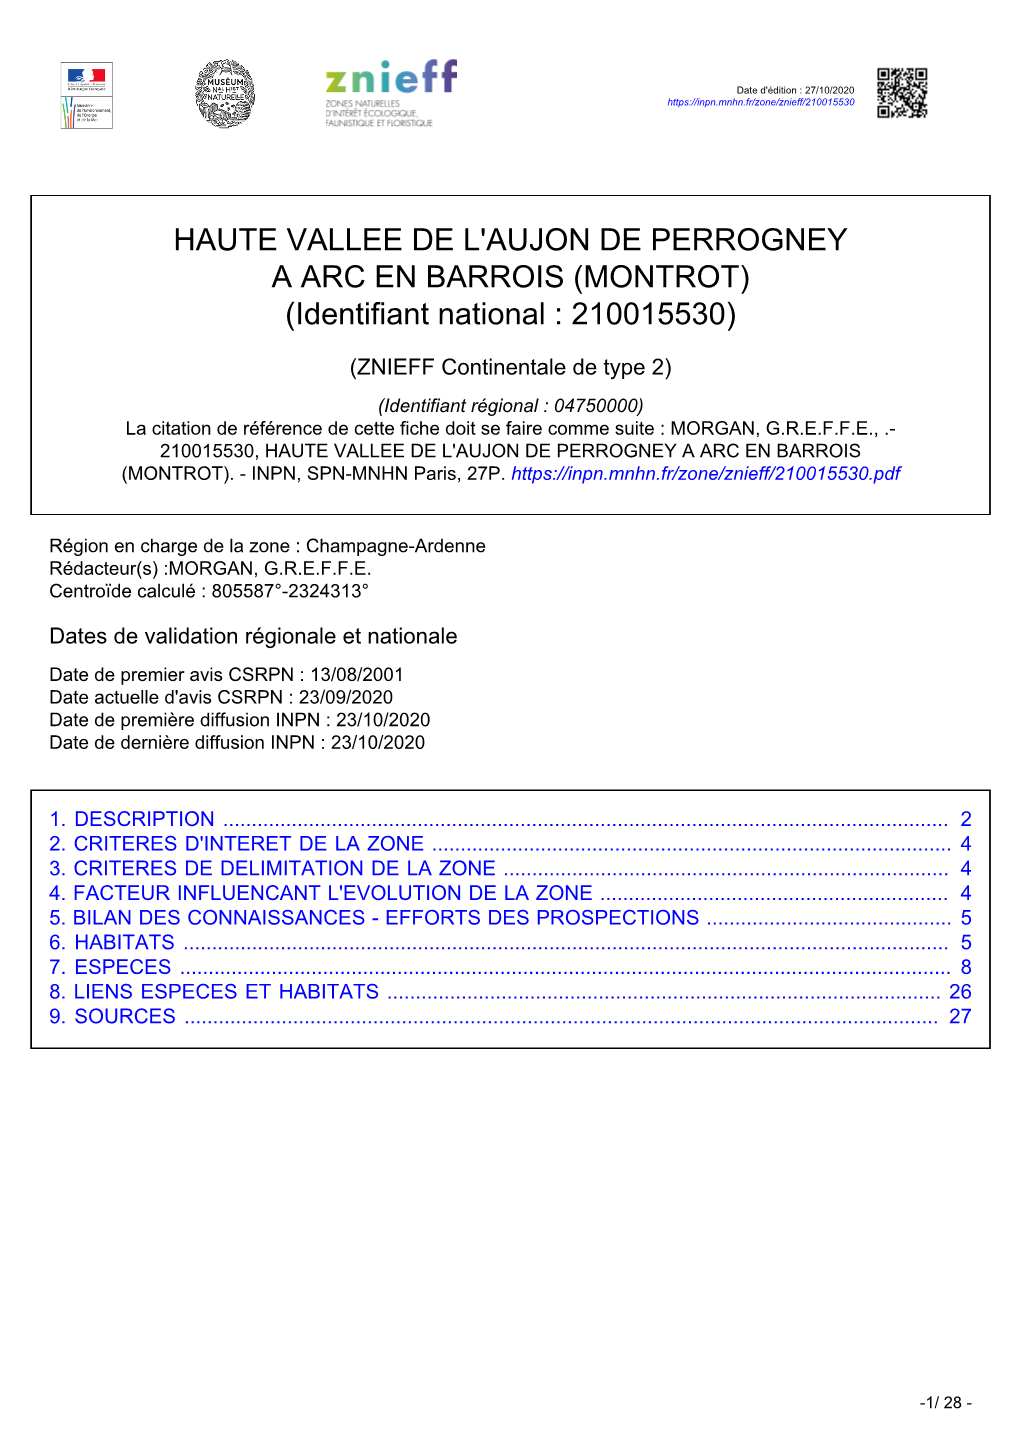 HAUTE VALLEE DE L'aujon DE PERROGNEY a ARC EN BARROIS (MONTROT) (Identifiant National : 210015530)